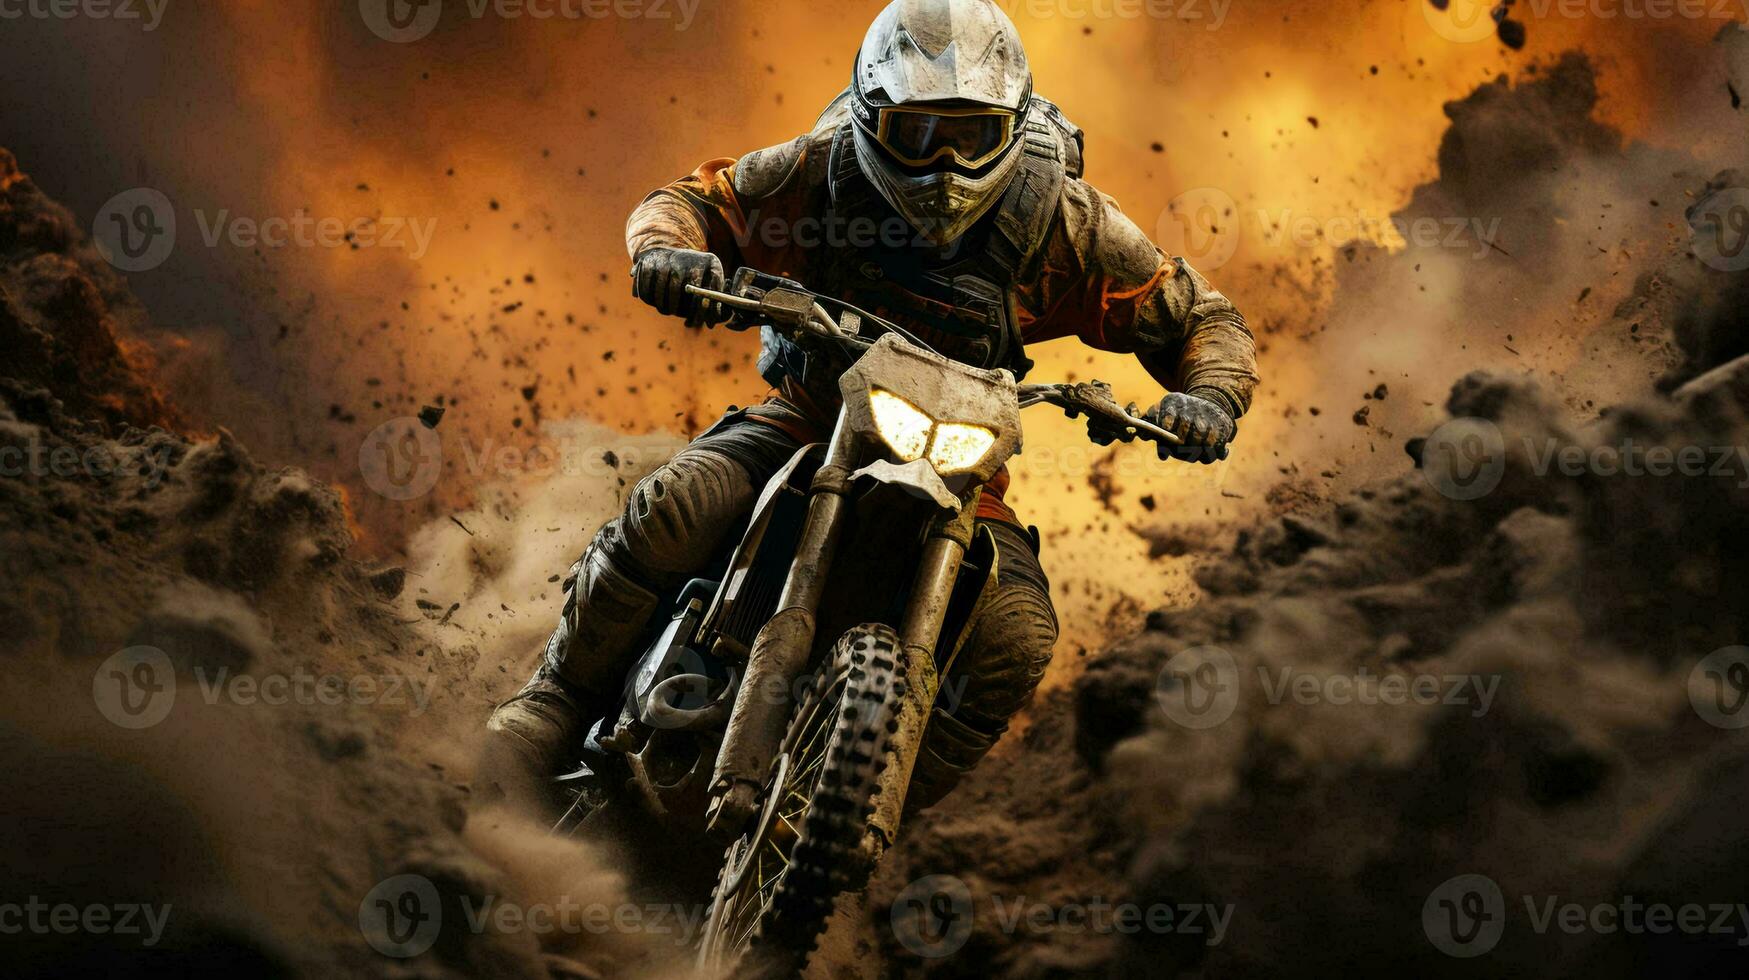 en motorcyklist på en motorcykel snabbt rider genom de smuts och damm på de Spår under en cross konkurrens foto